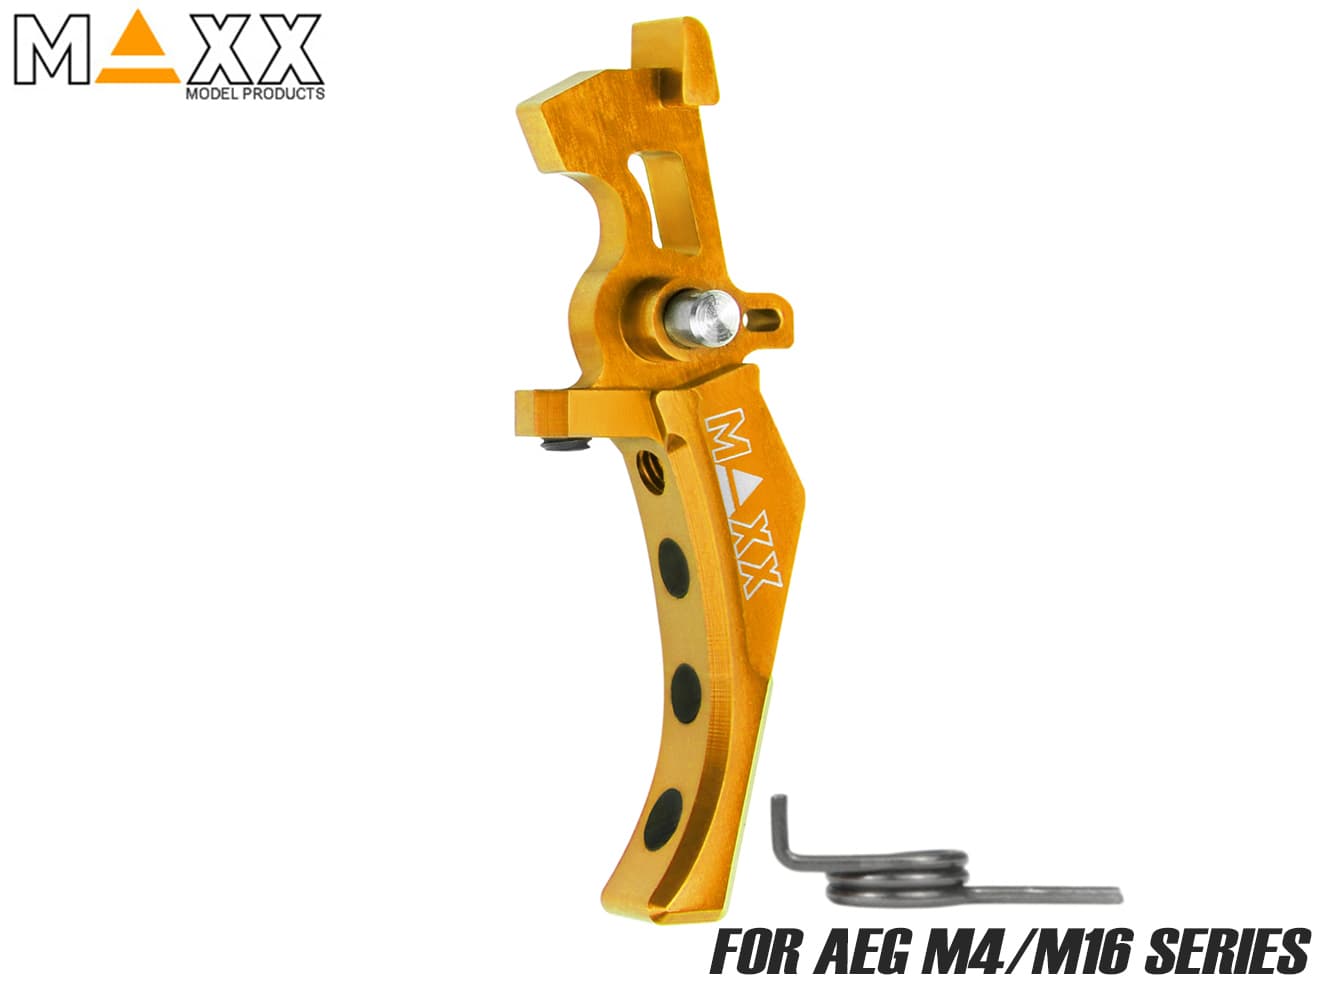 MAXX アルミCNC アドバンスド スピードトリガー type D for AEG M4 [カラー：ブラック / オレンジ / シルバー / レッド / ブルー / チタン]